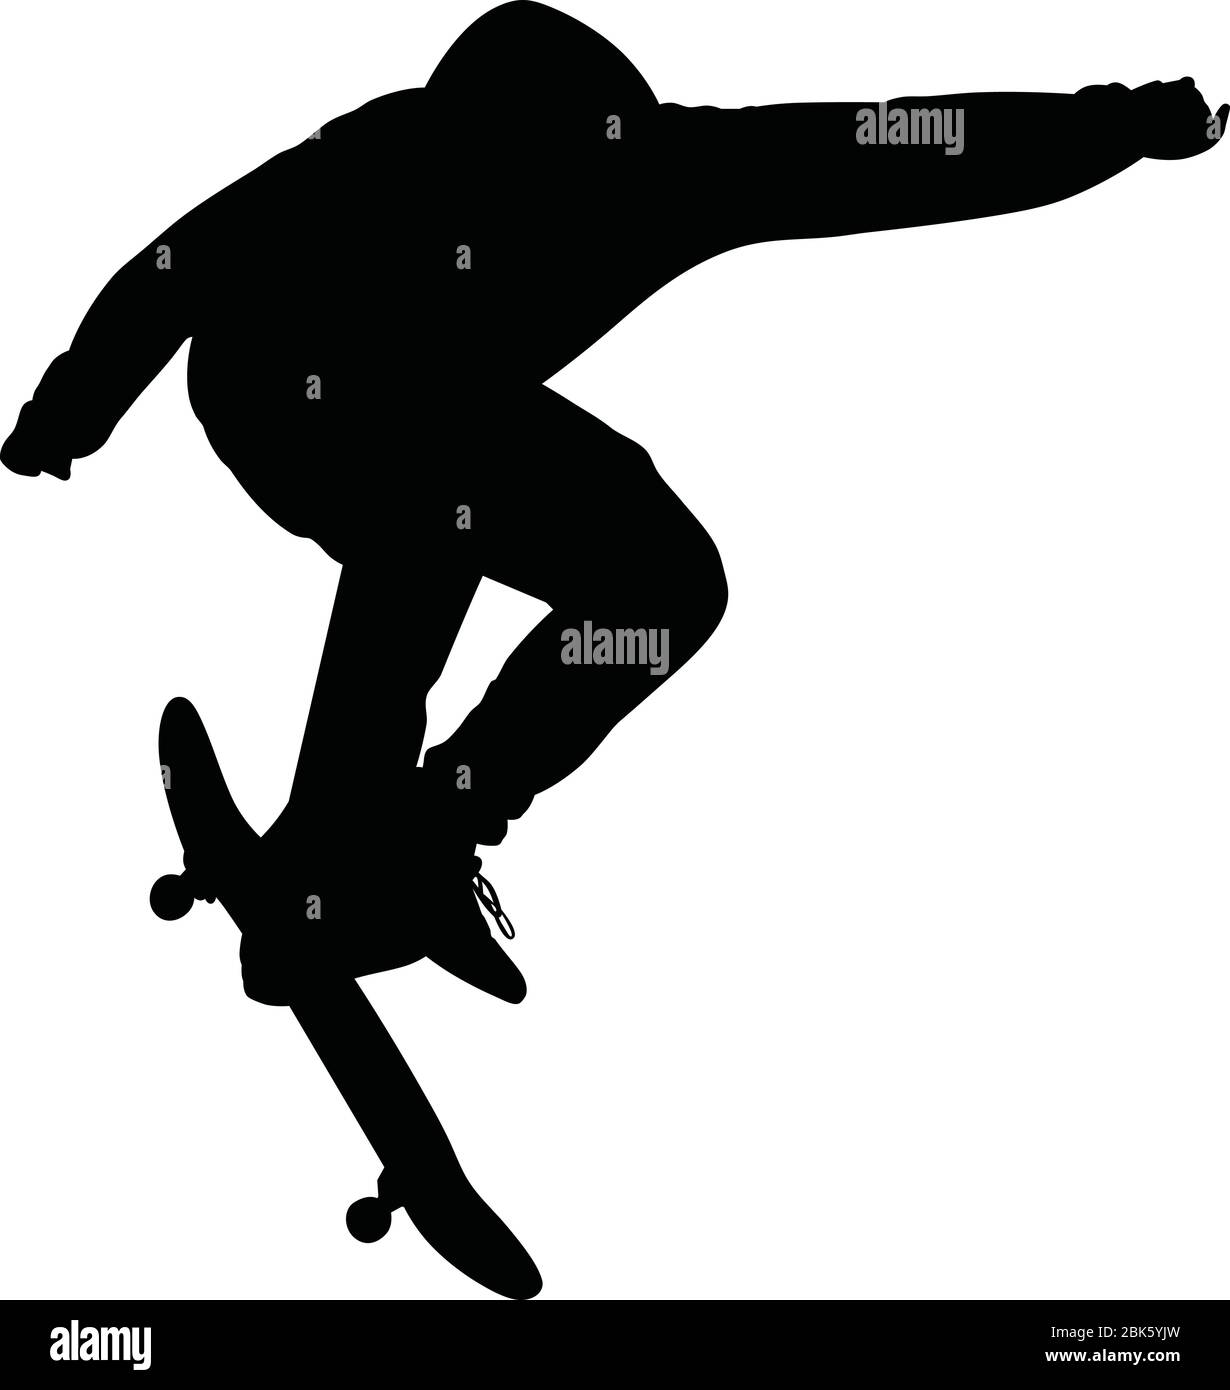 Vektor Silhouette von männlichen Skater springen an Bord in extremen Skateboarding Sport Wettbewerb, grafische Illustration von jungen Mann auf Skating Praxis in Stock Vektor